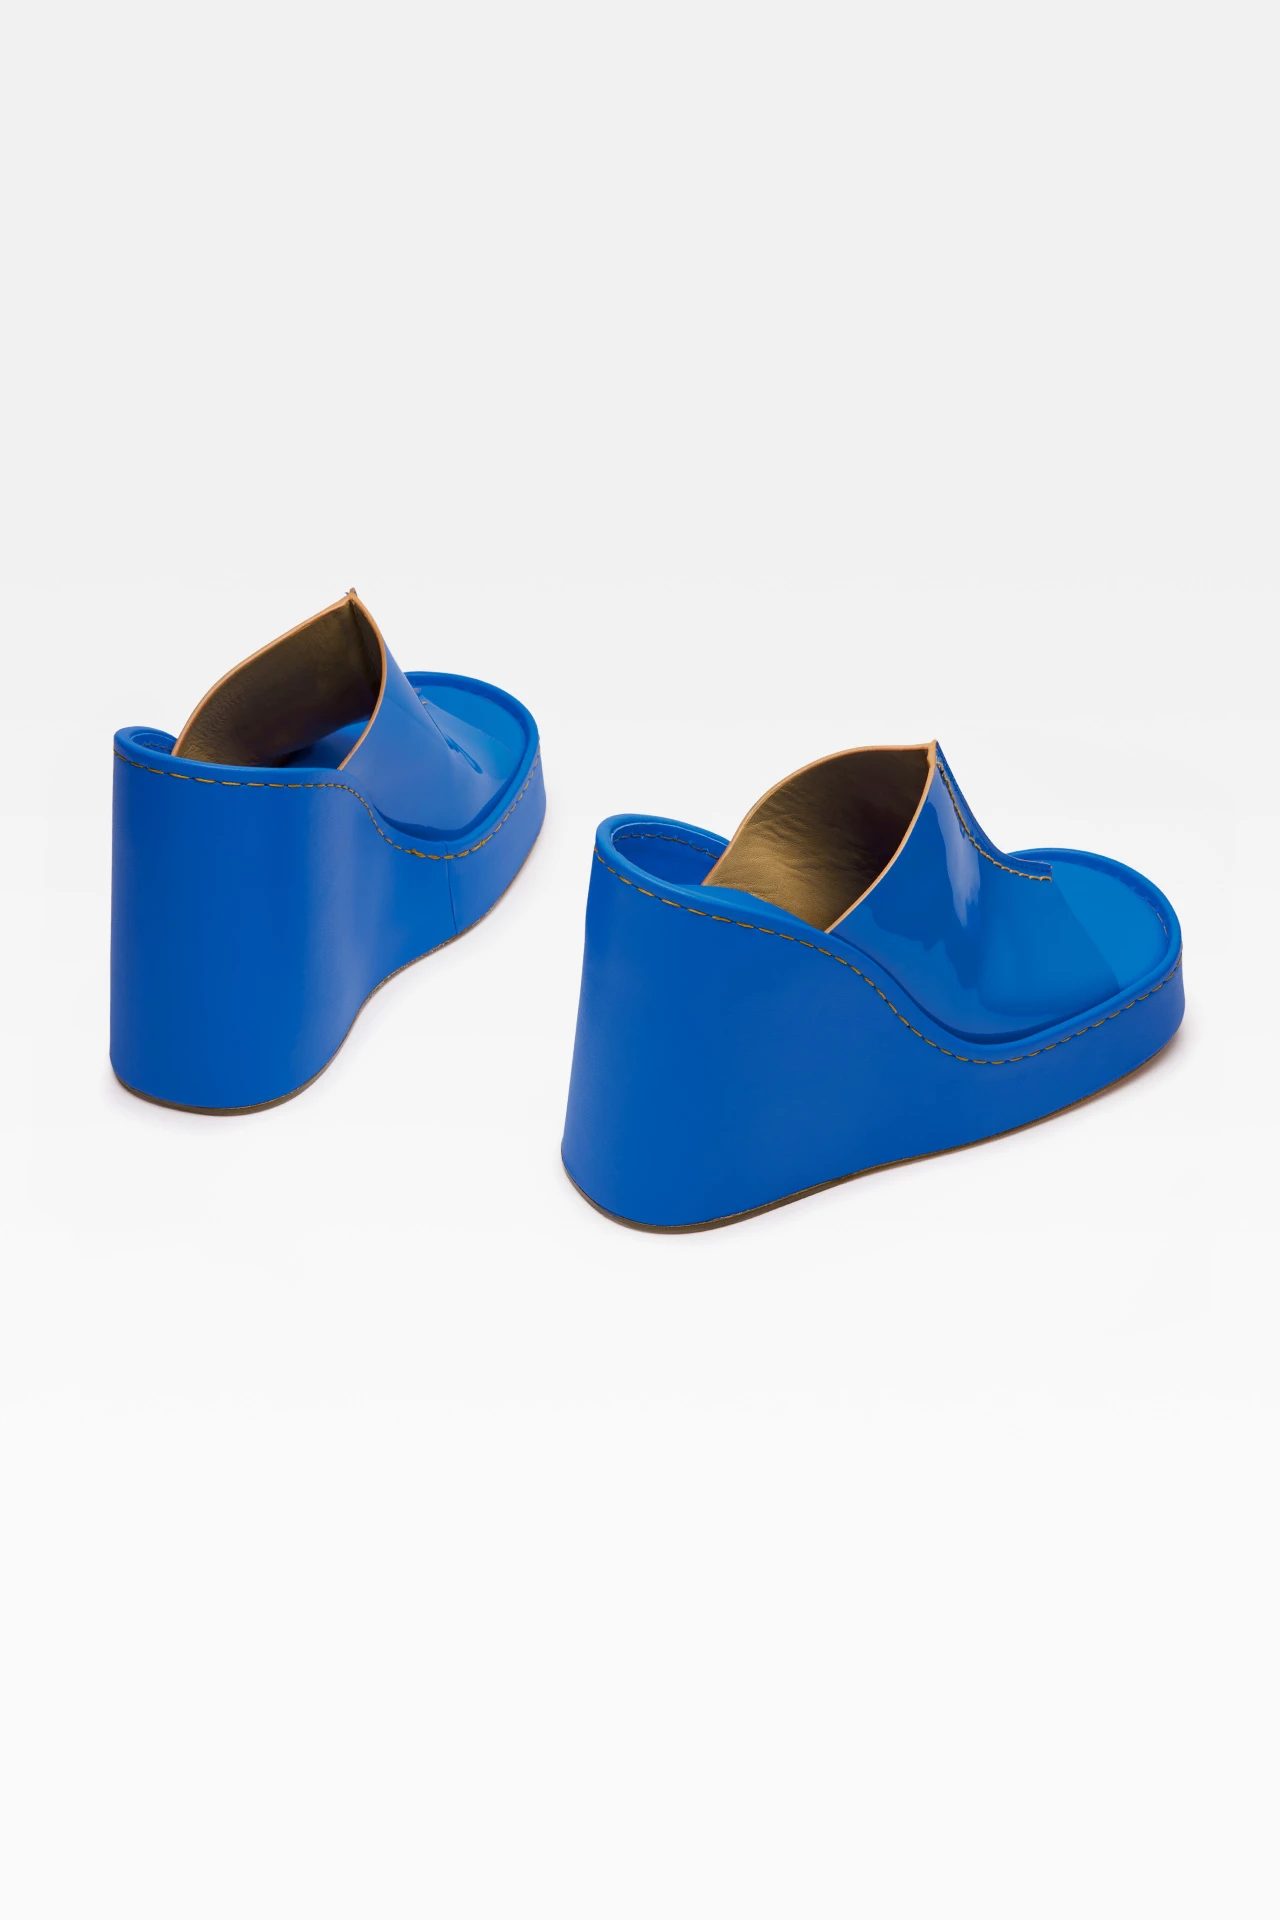 miista-rhea-blue-sandals-3